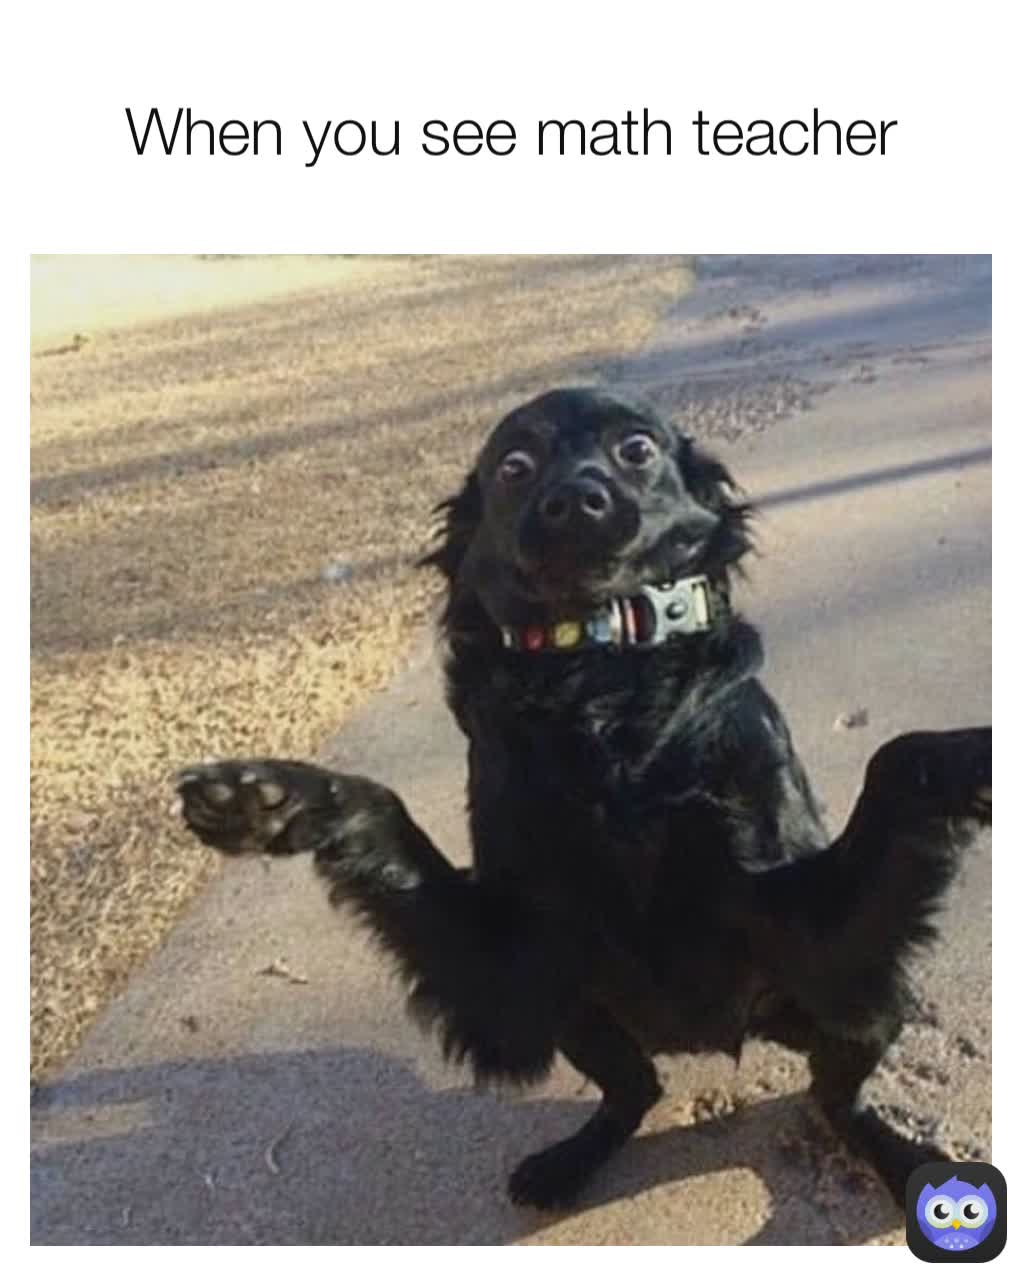 When you see math teacher